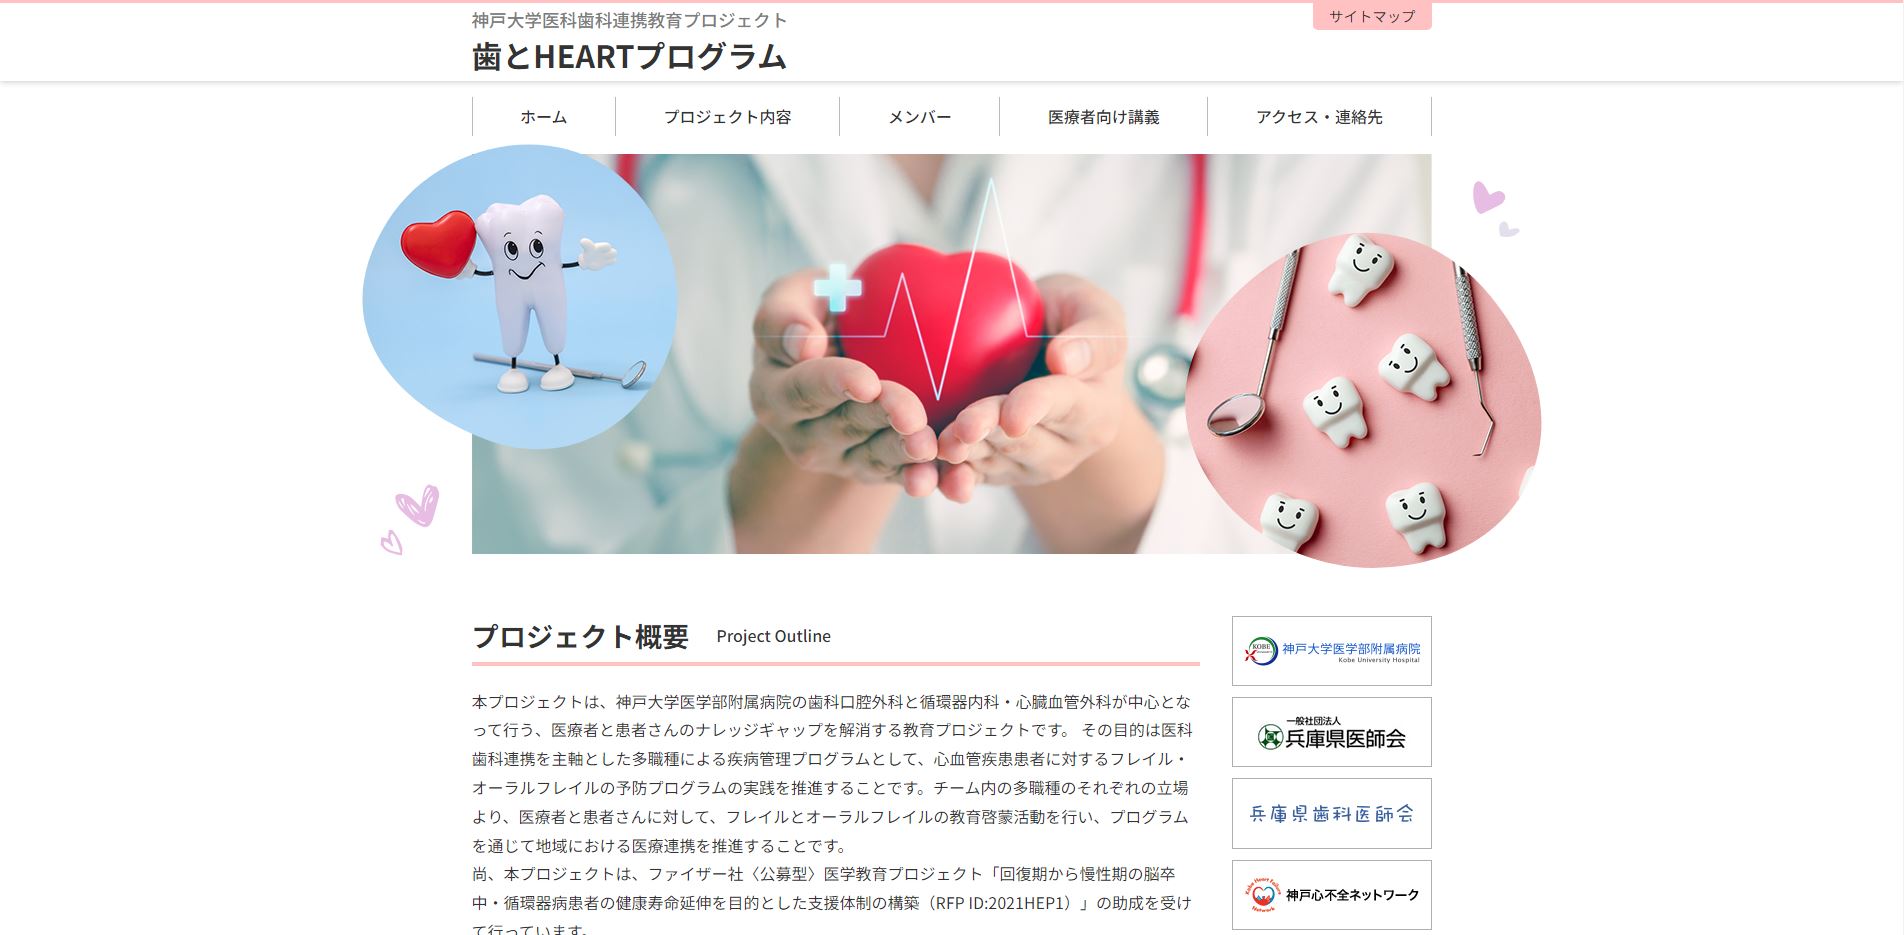 神戸大学医科歯科連携教育プロジェクト 歯とHEARTプロジェクト